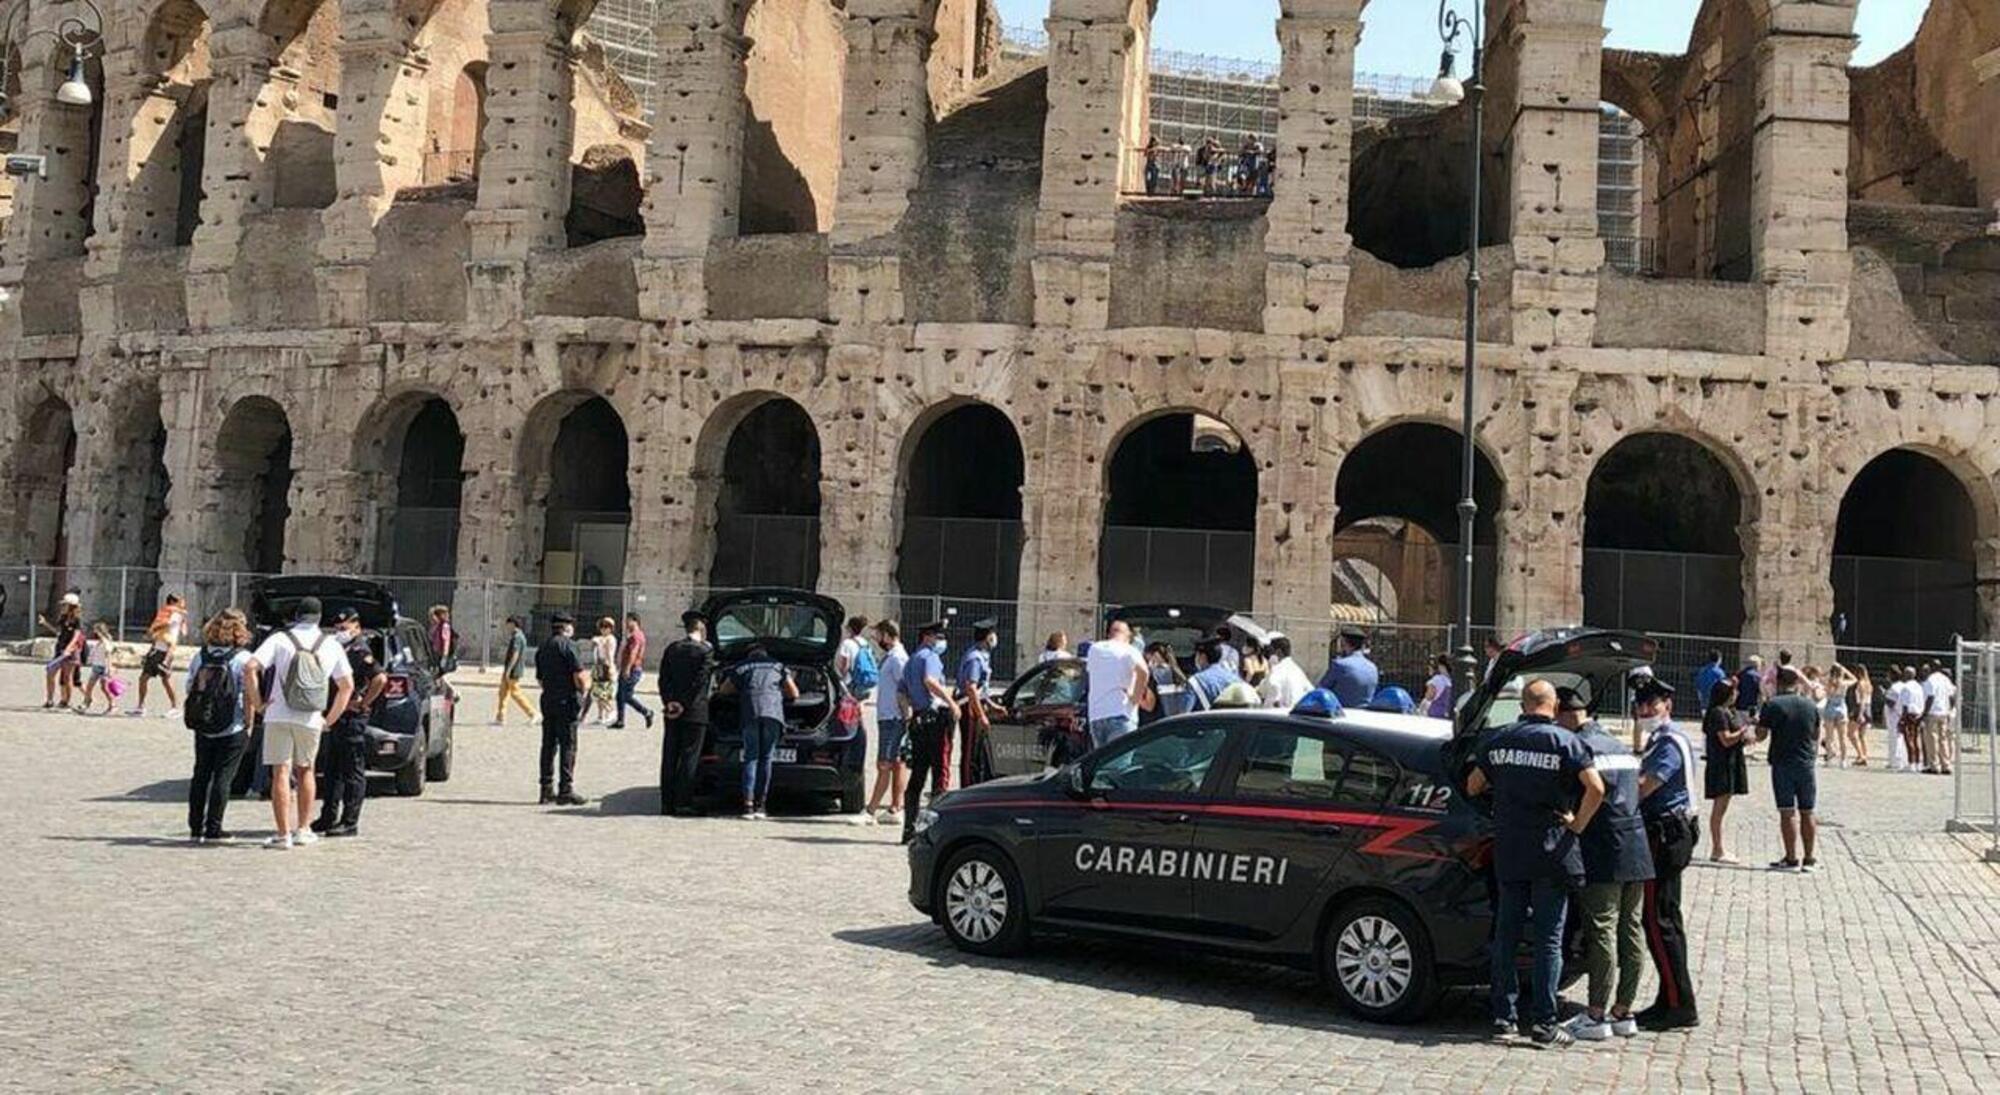 Intervento dei carabinieri contro i bagarini al Colosseo